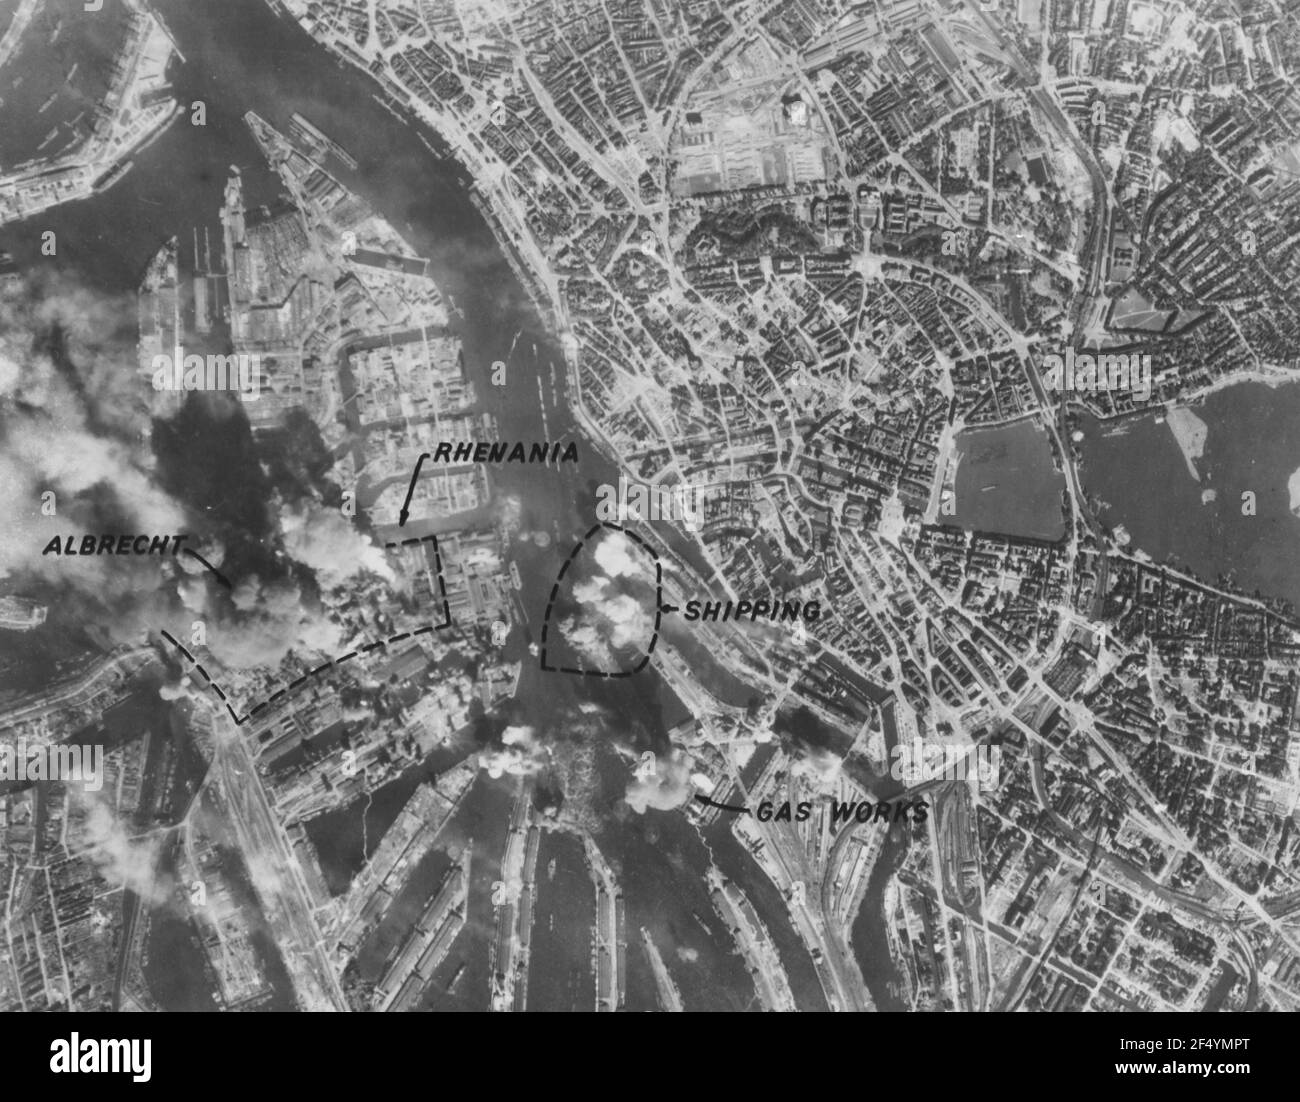 Bombardierung der Werke Hamburg-Rhenania-Ossag und Abrecht durch US-amerikanische Schwerbomber im Zweiten Weltkrieg Stockfoto